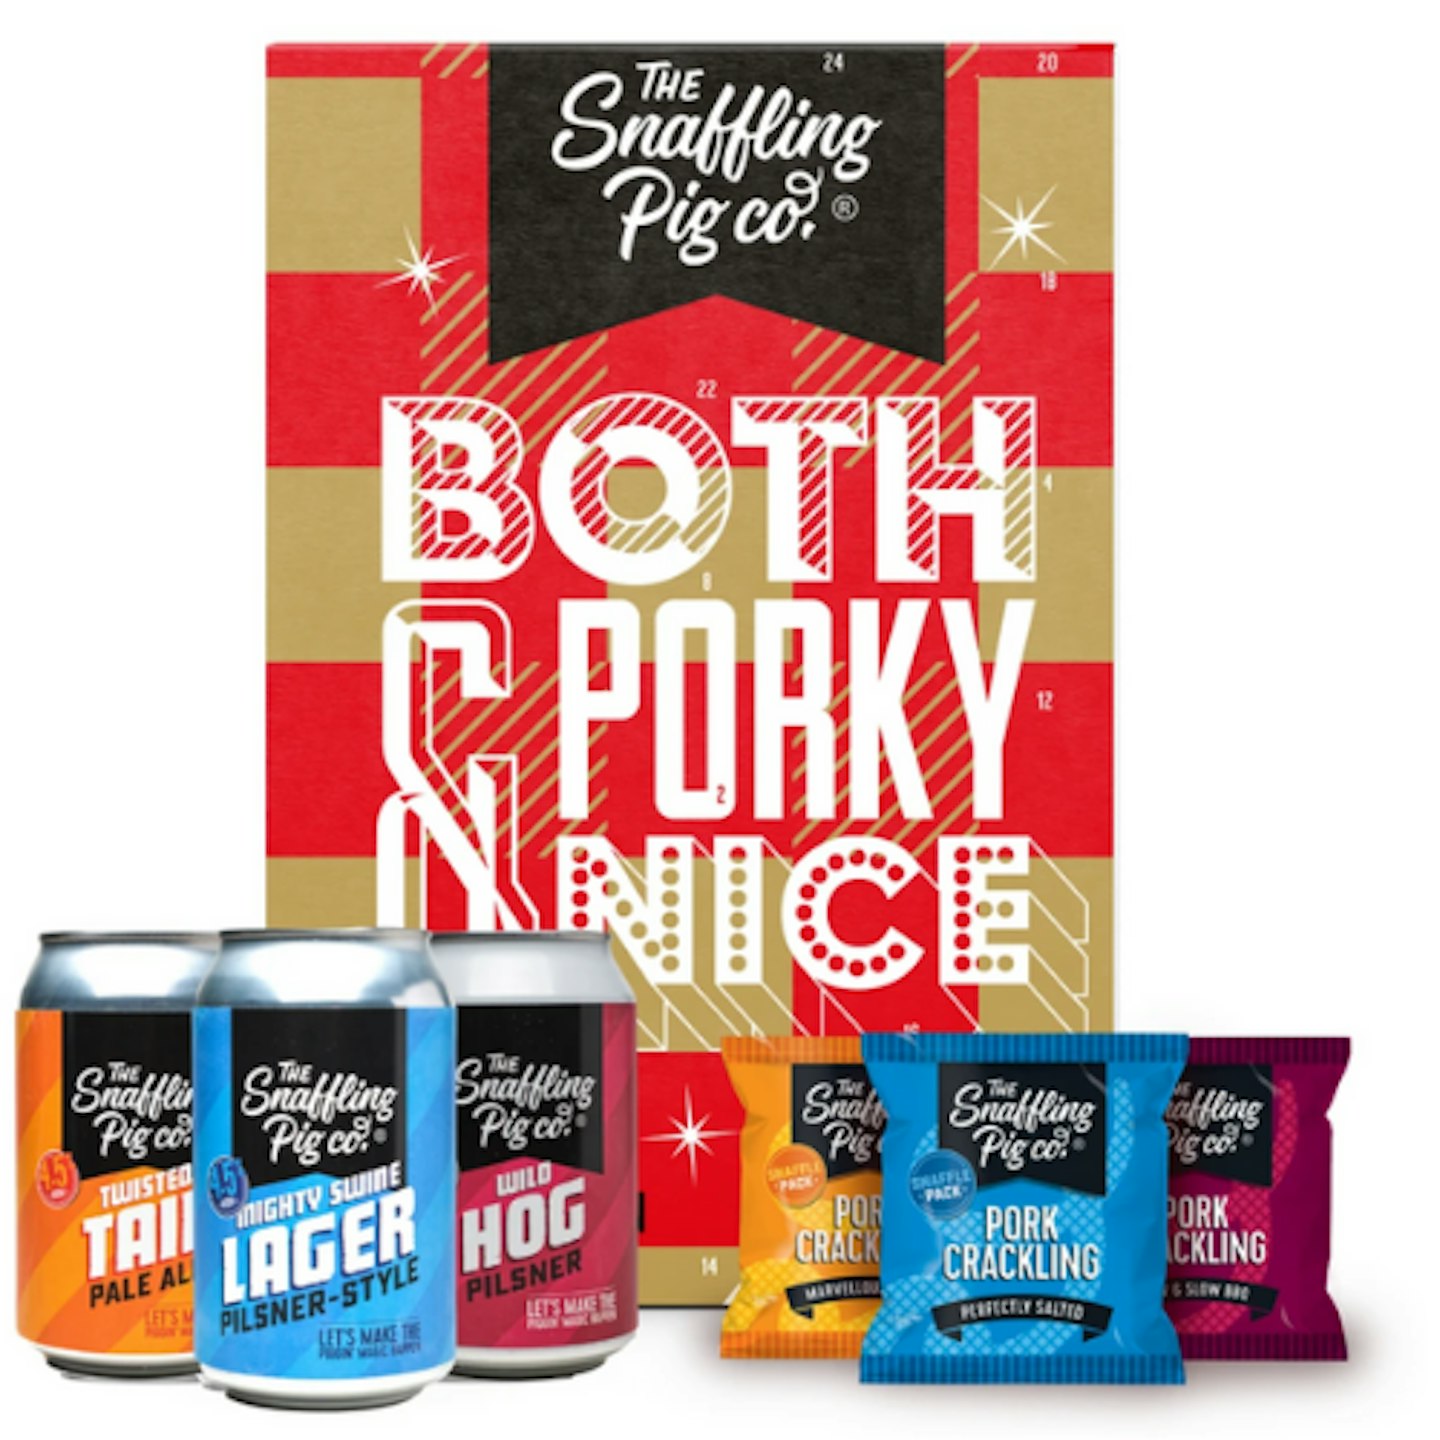 The Snaffling Pig Co. Pork Crackling and Beer Advent Calendar